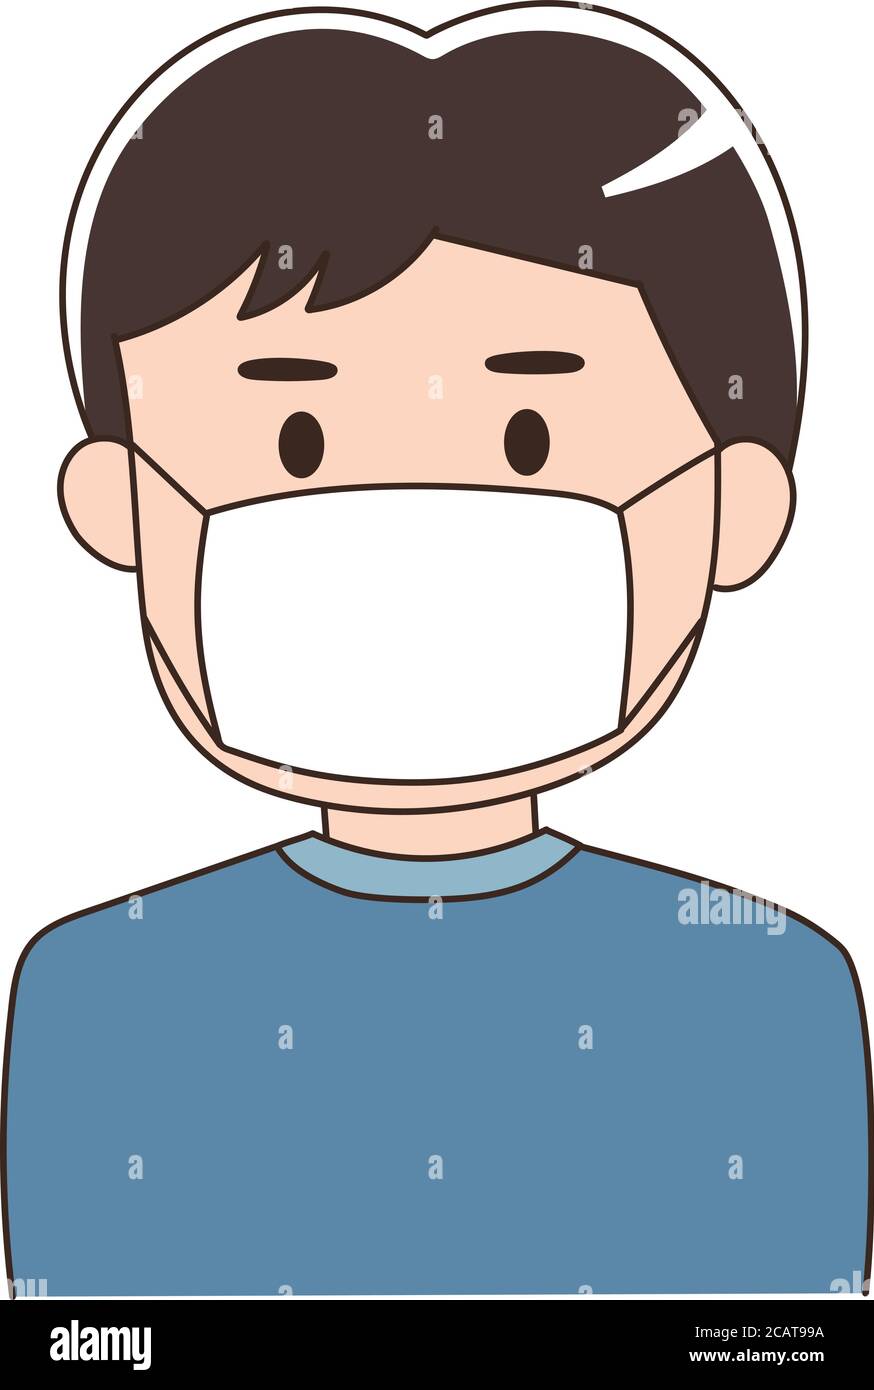 Mann, der eine medizinische Maske trägt, um Corona-Virus oder covid-19 oder eine andere Art von Virus zu verhindern. Vektorgrafik isoliert auf weißem Hintergrund. Stock Vektor